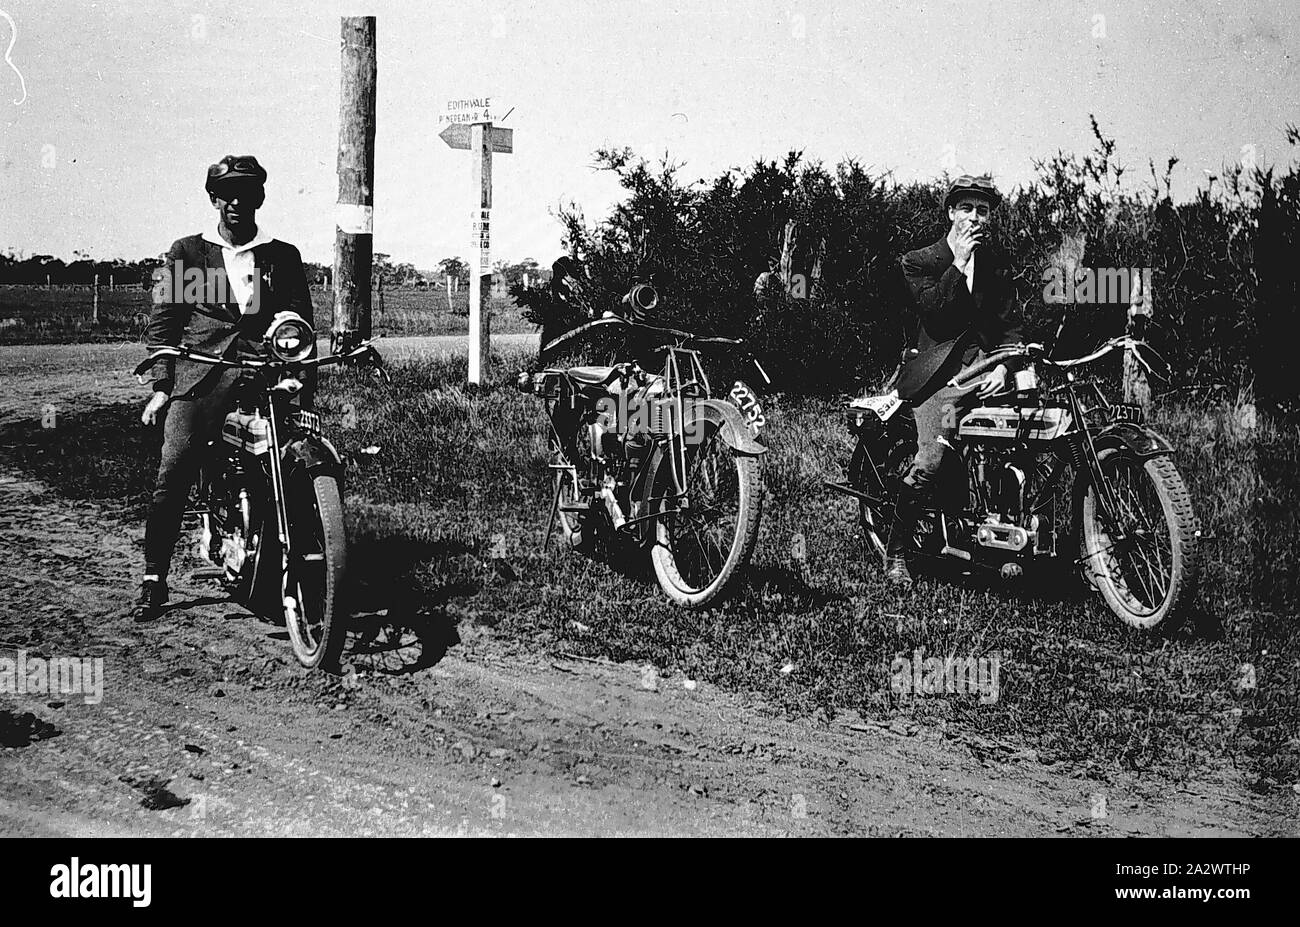 Negativo - Edithvale District, Victoria, circa 1930, due uomini in moto accanto a una strada sterrata. Un terzo moto, presumibilmente il fotografo, è parcheggiata tra di loro Foto Stock